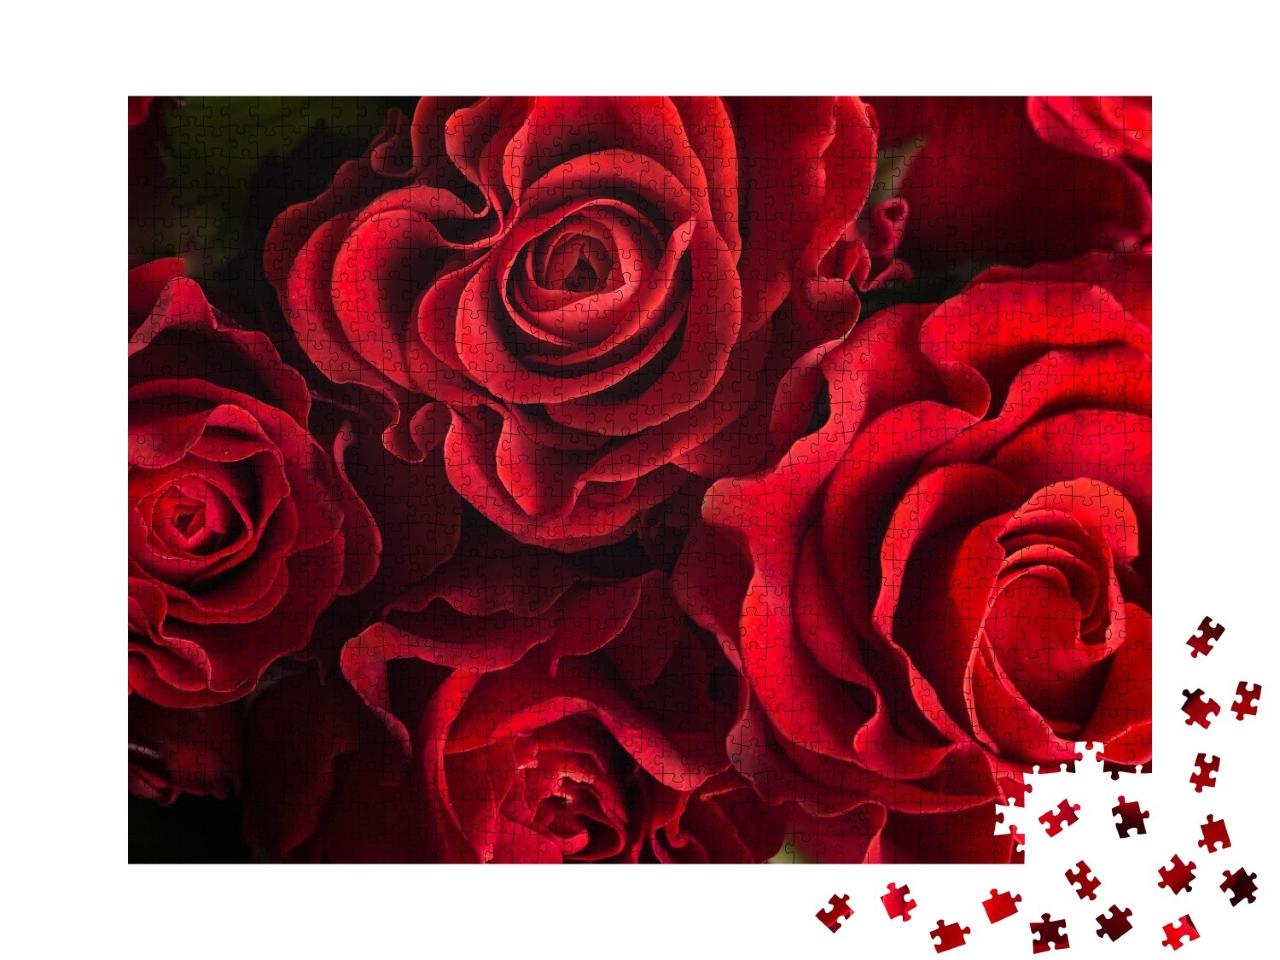 Puzzle de 1000 pièces « Bouquet de roses rouges fraîches »